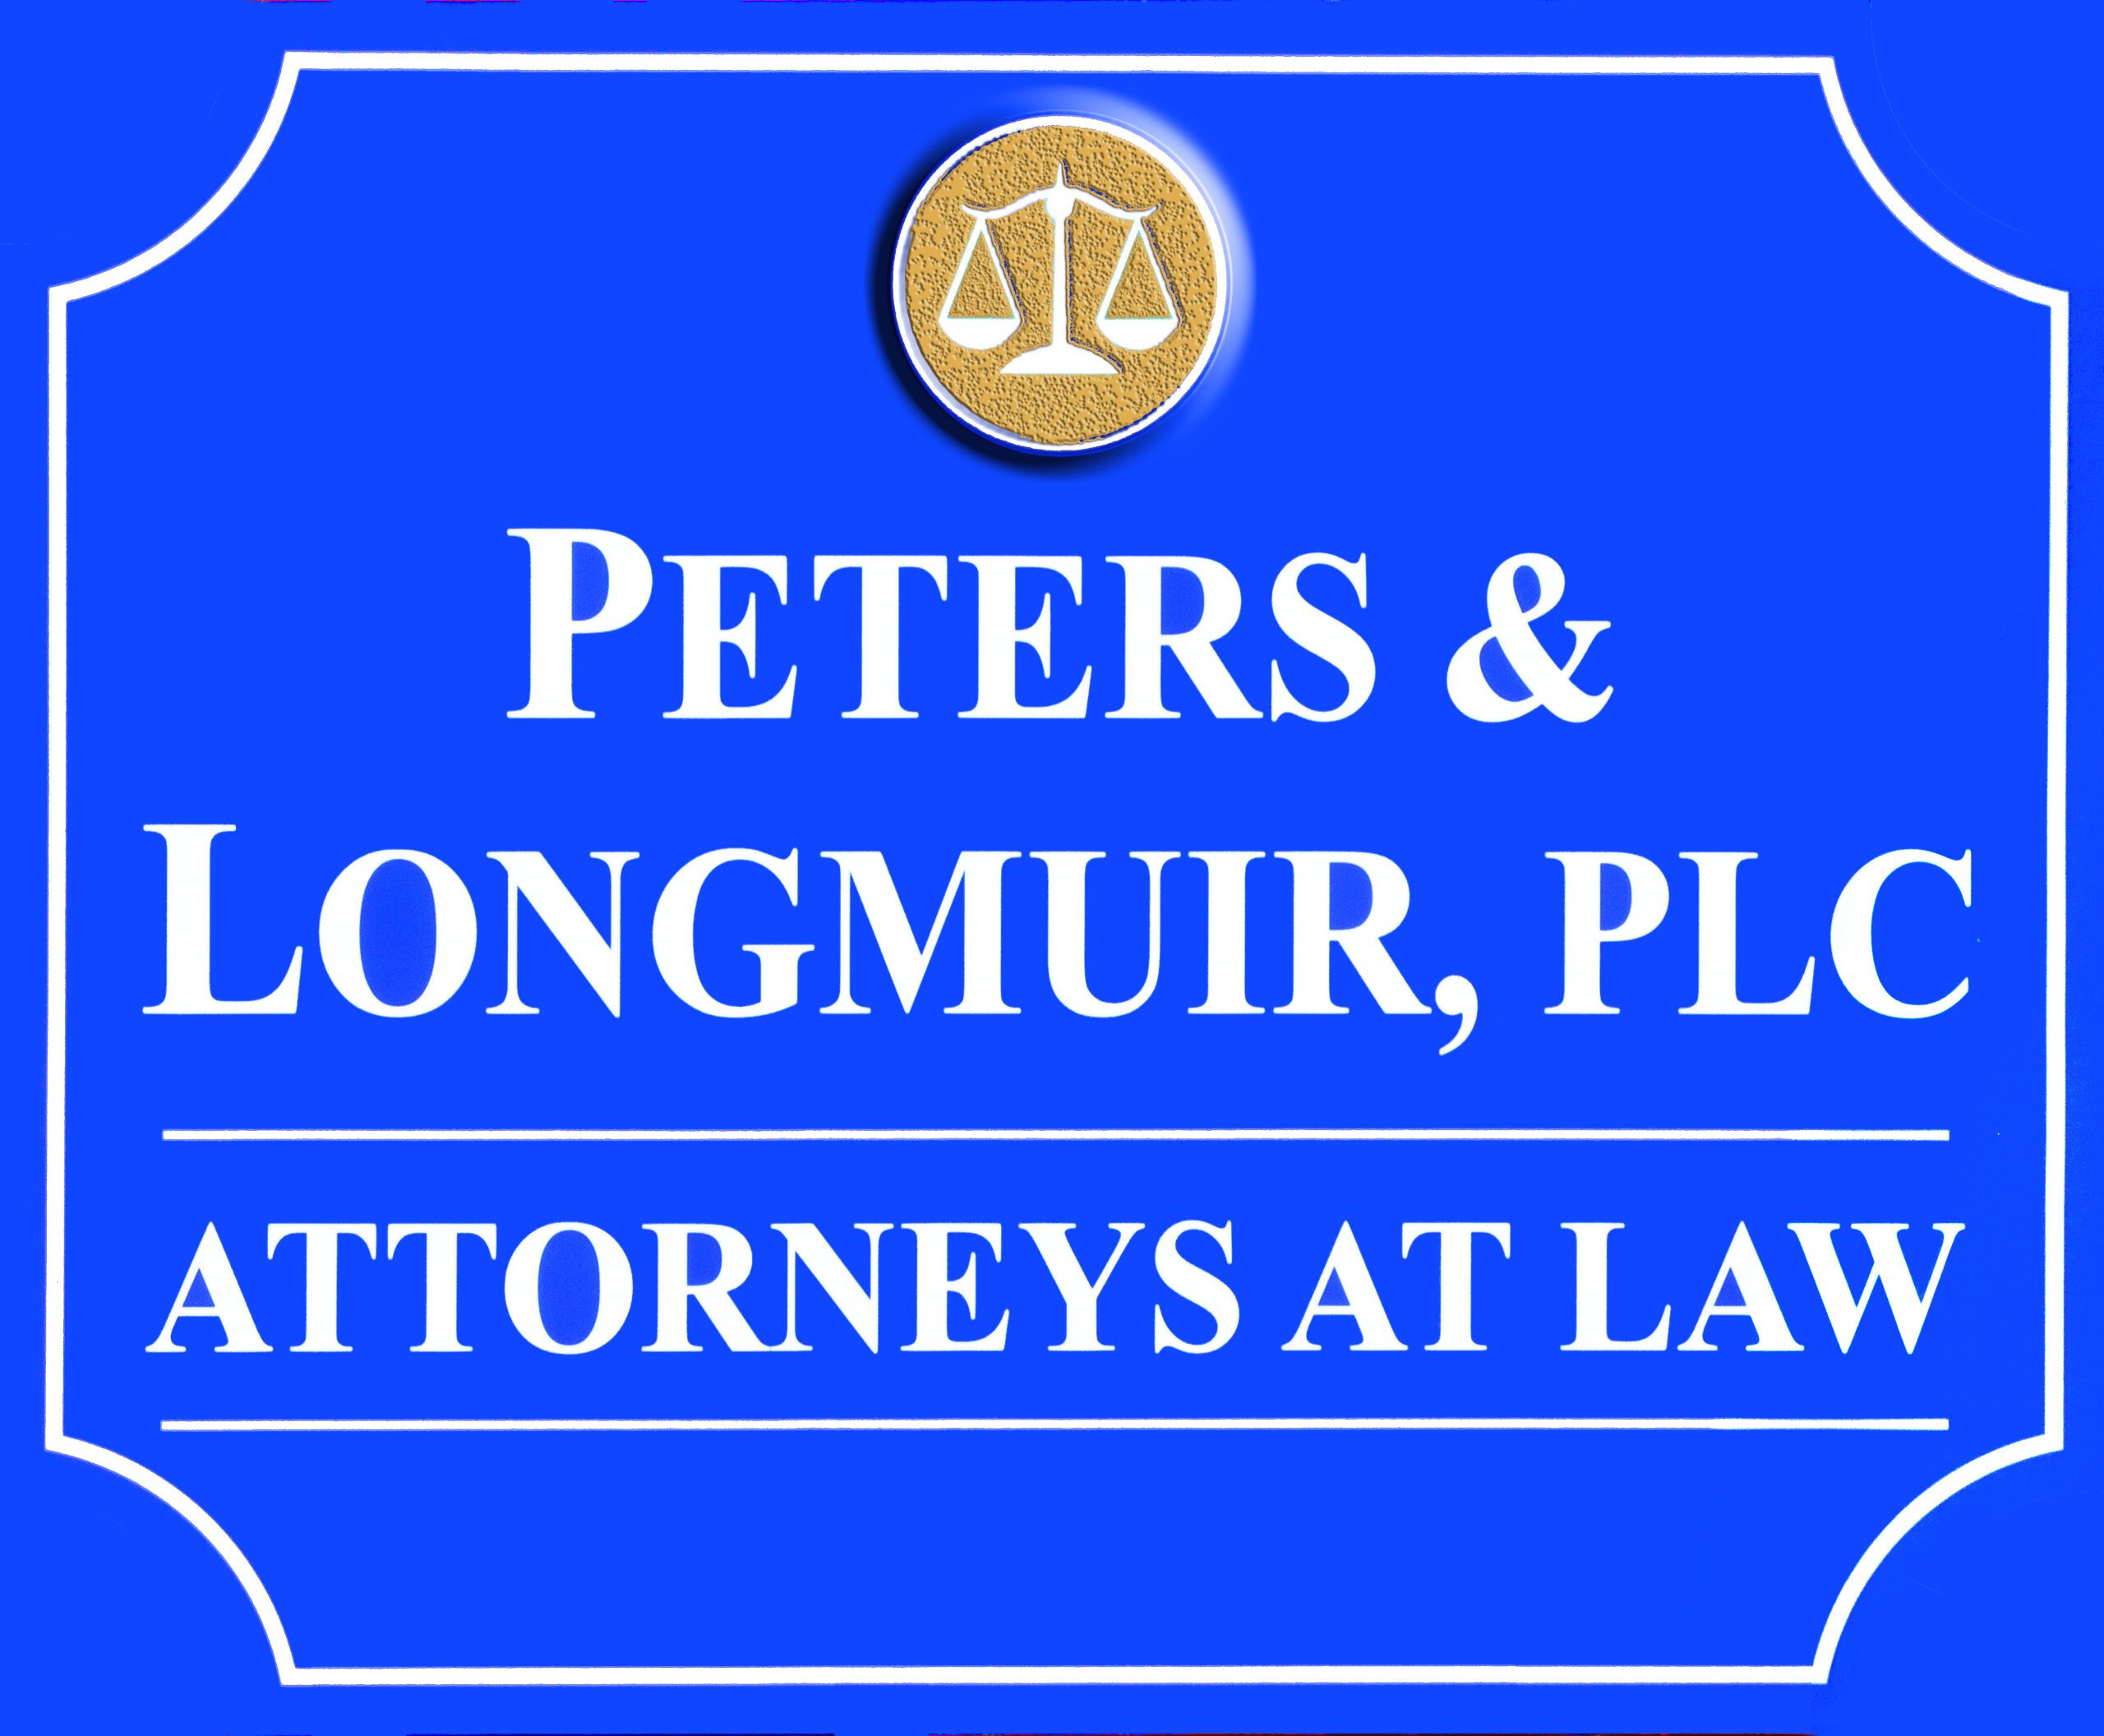 Peters & Longmuir, PLC